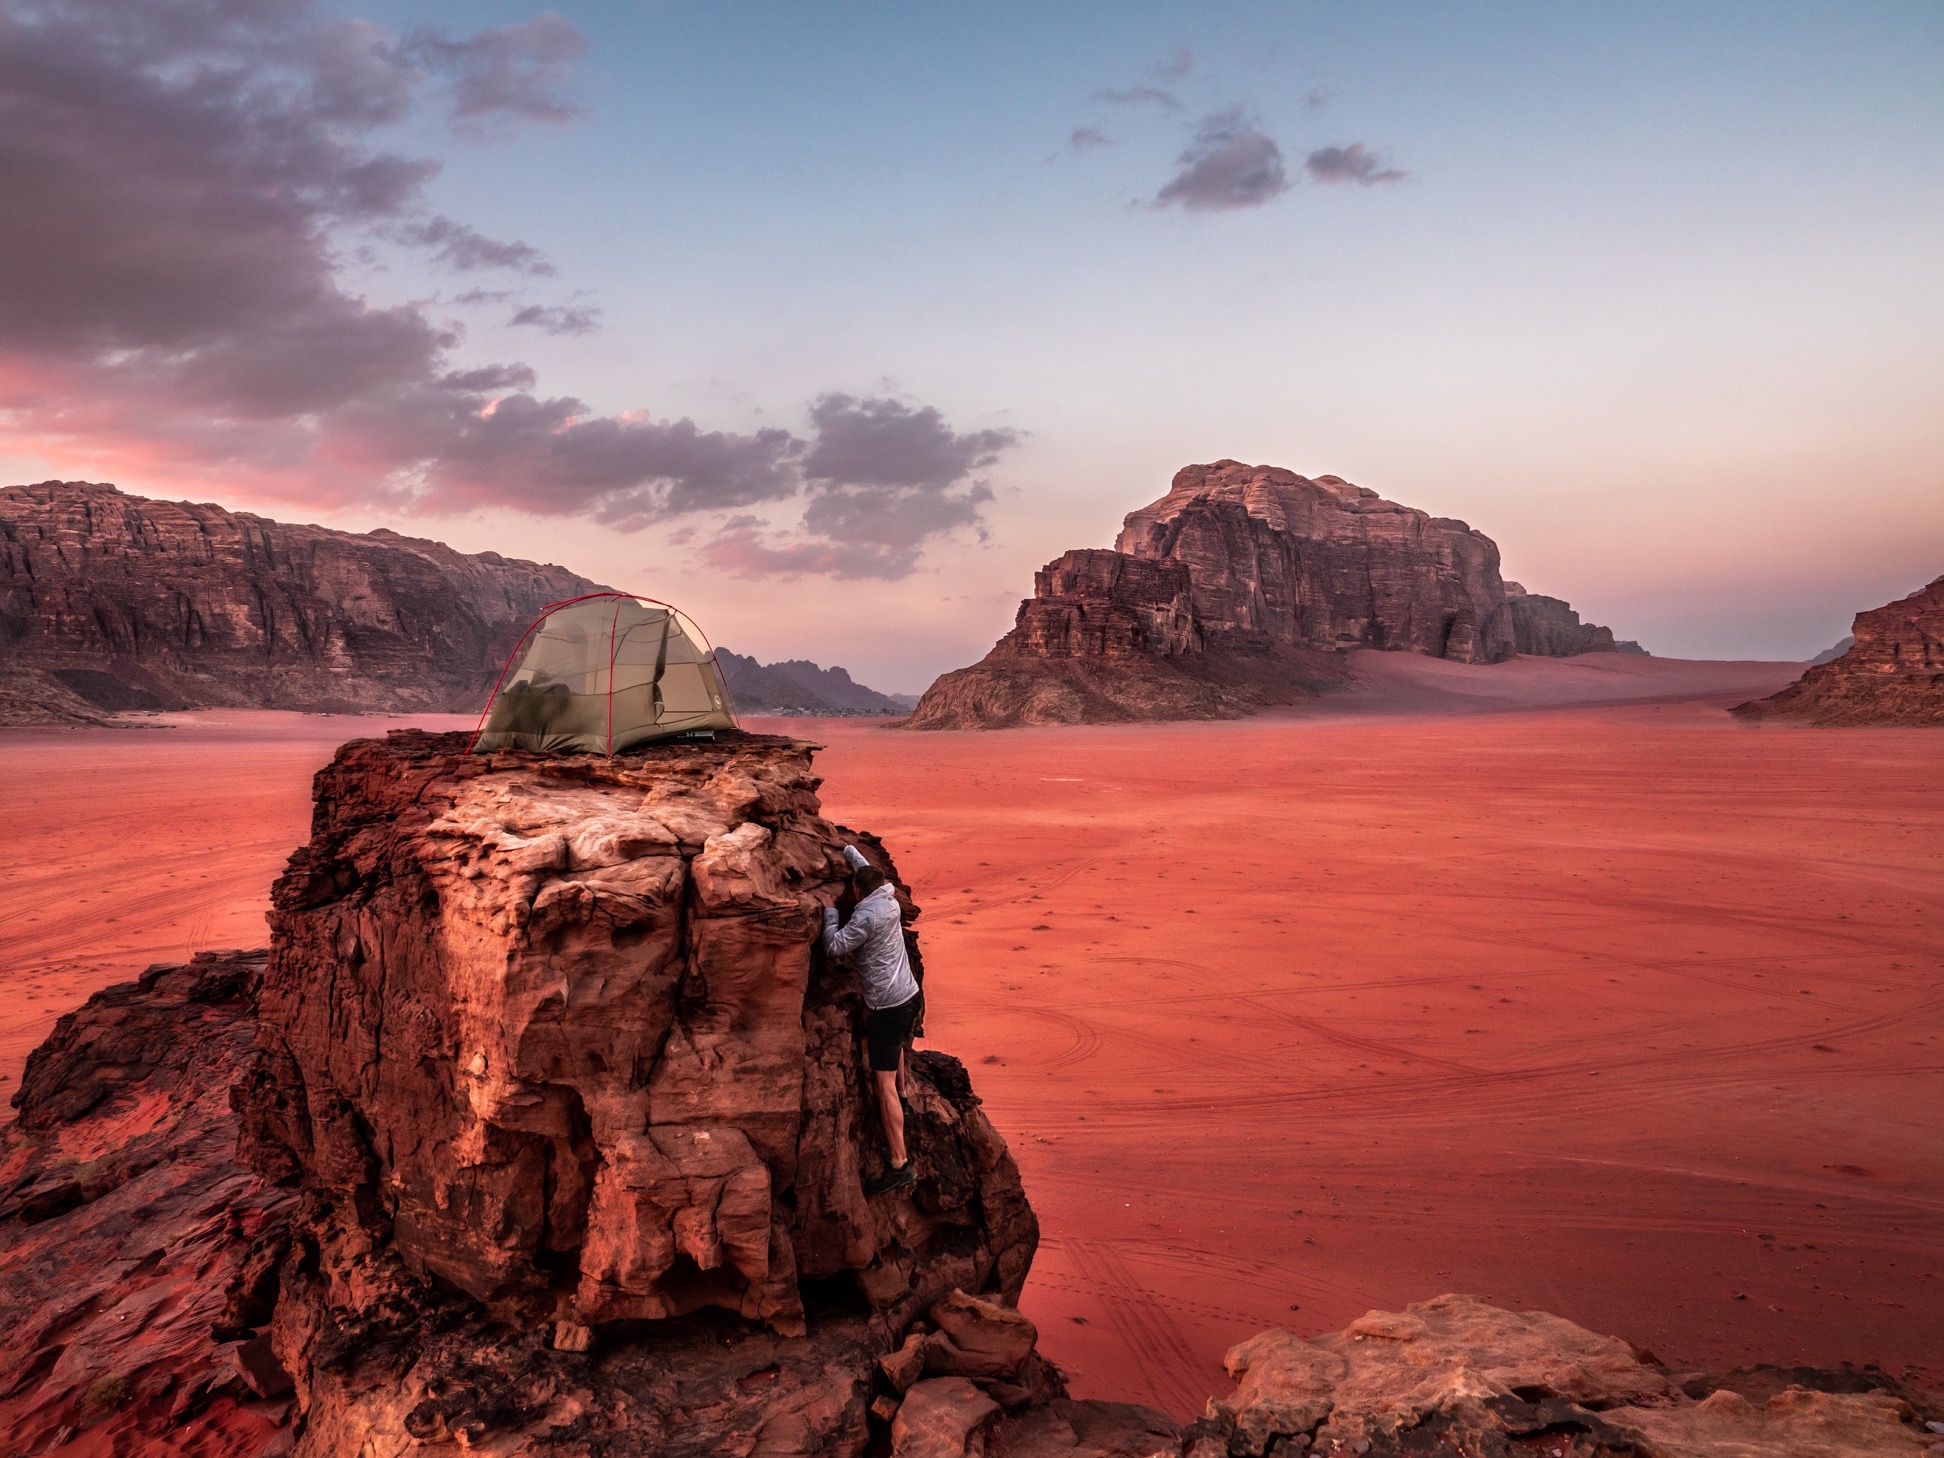 Wadi Rum desert thrills